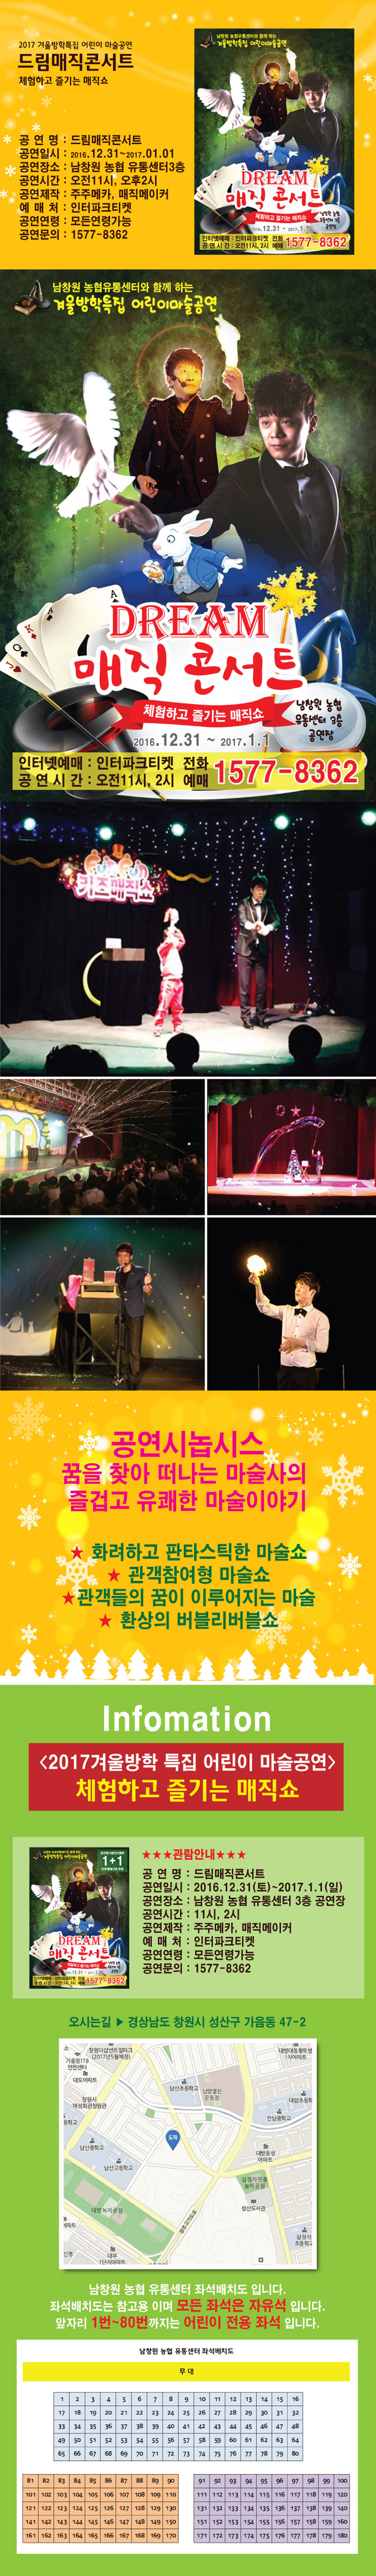 창원마술 !!! 남창원유통센터 공연장 "드림매직콘서트" 12월31일 1월1일 진행됩니다!! 